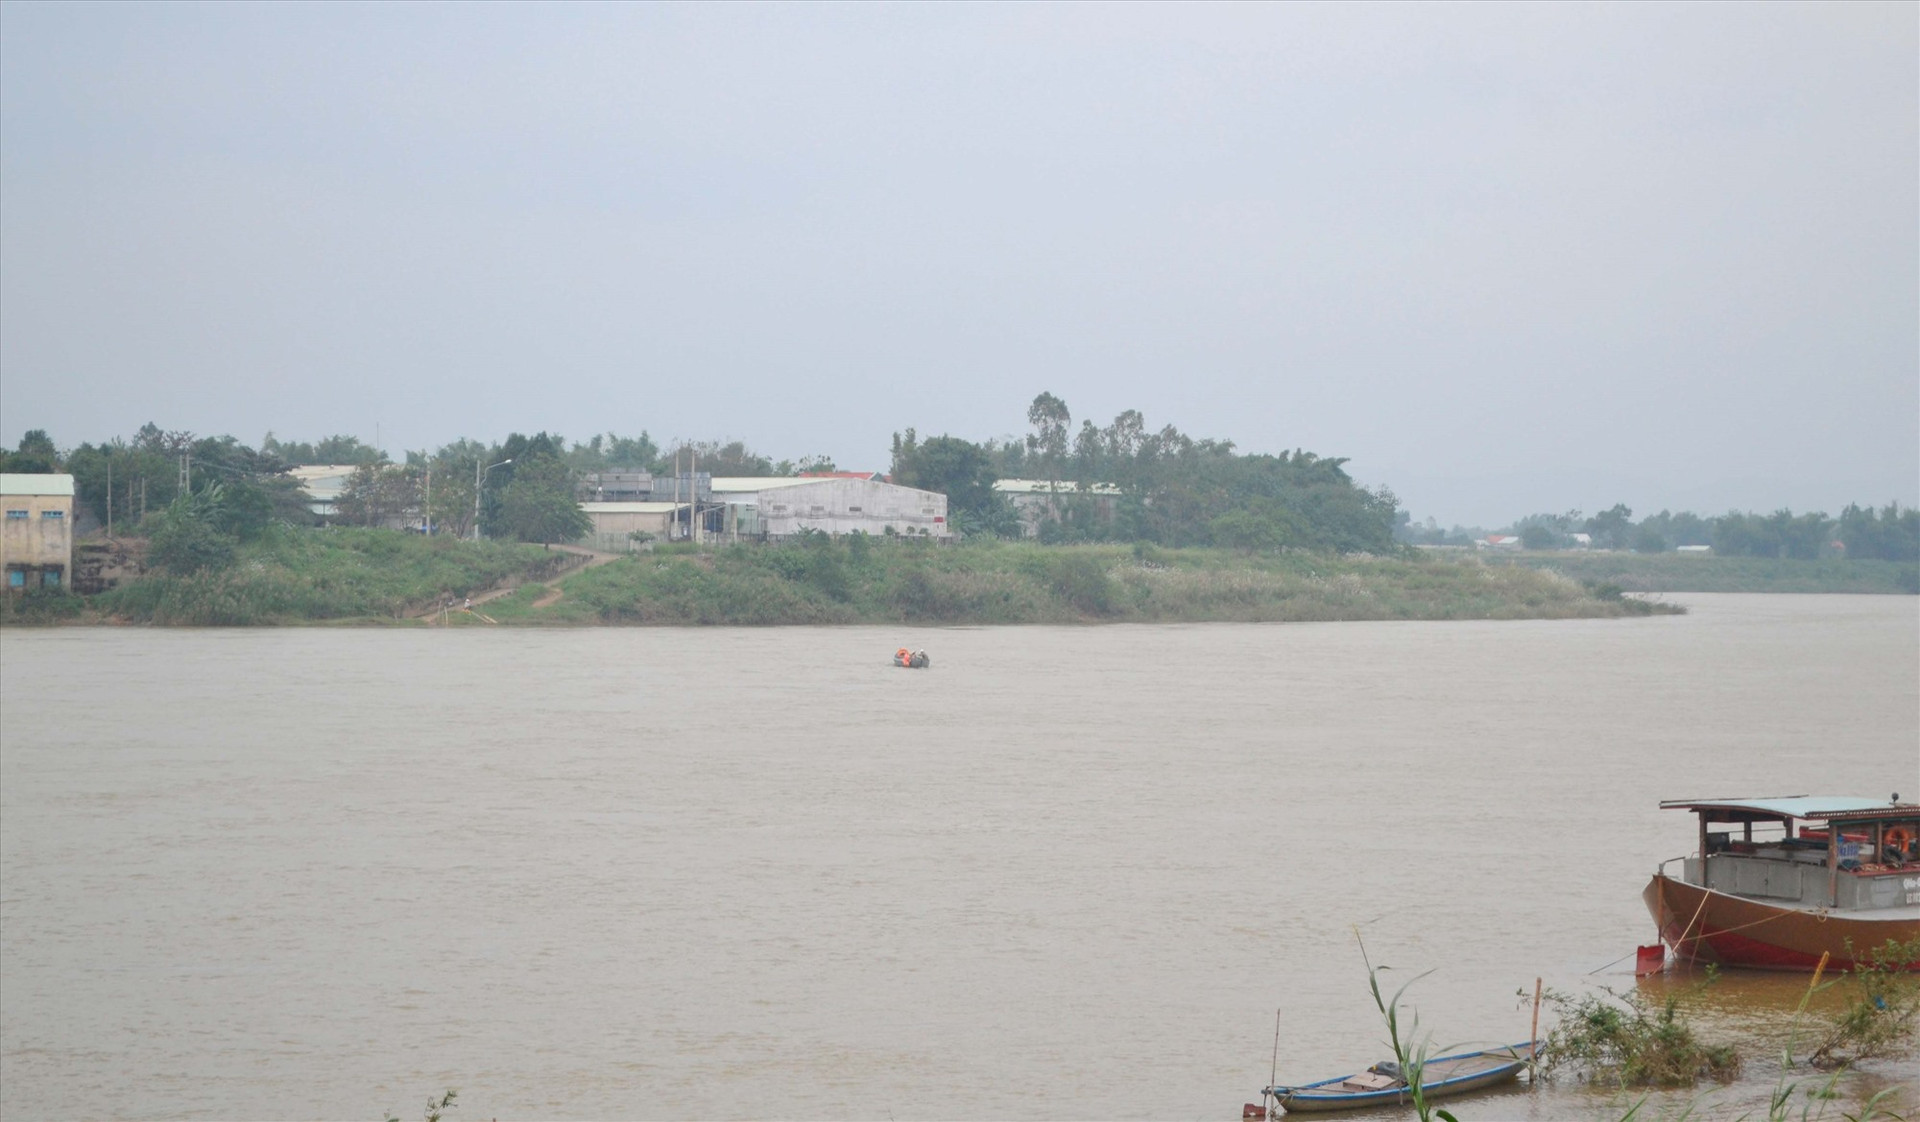 Giai đoạn 2021 - 2025, Sở GTVT kiến nghị xây dựng cầu Điện Quang bắc qua sông Thu Bồn tại vị trí này để hình thành trục Đông - Tây 03. Ảnh: CÔNG TÚ